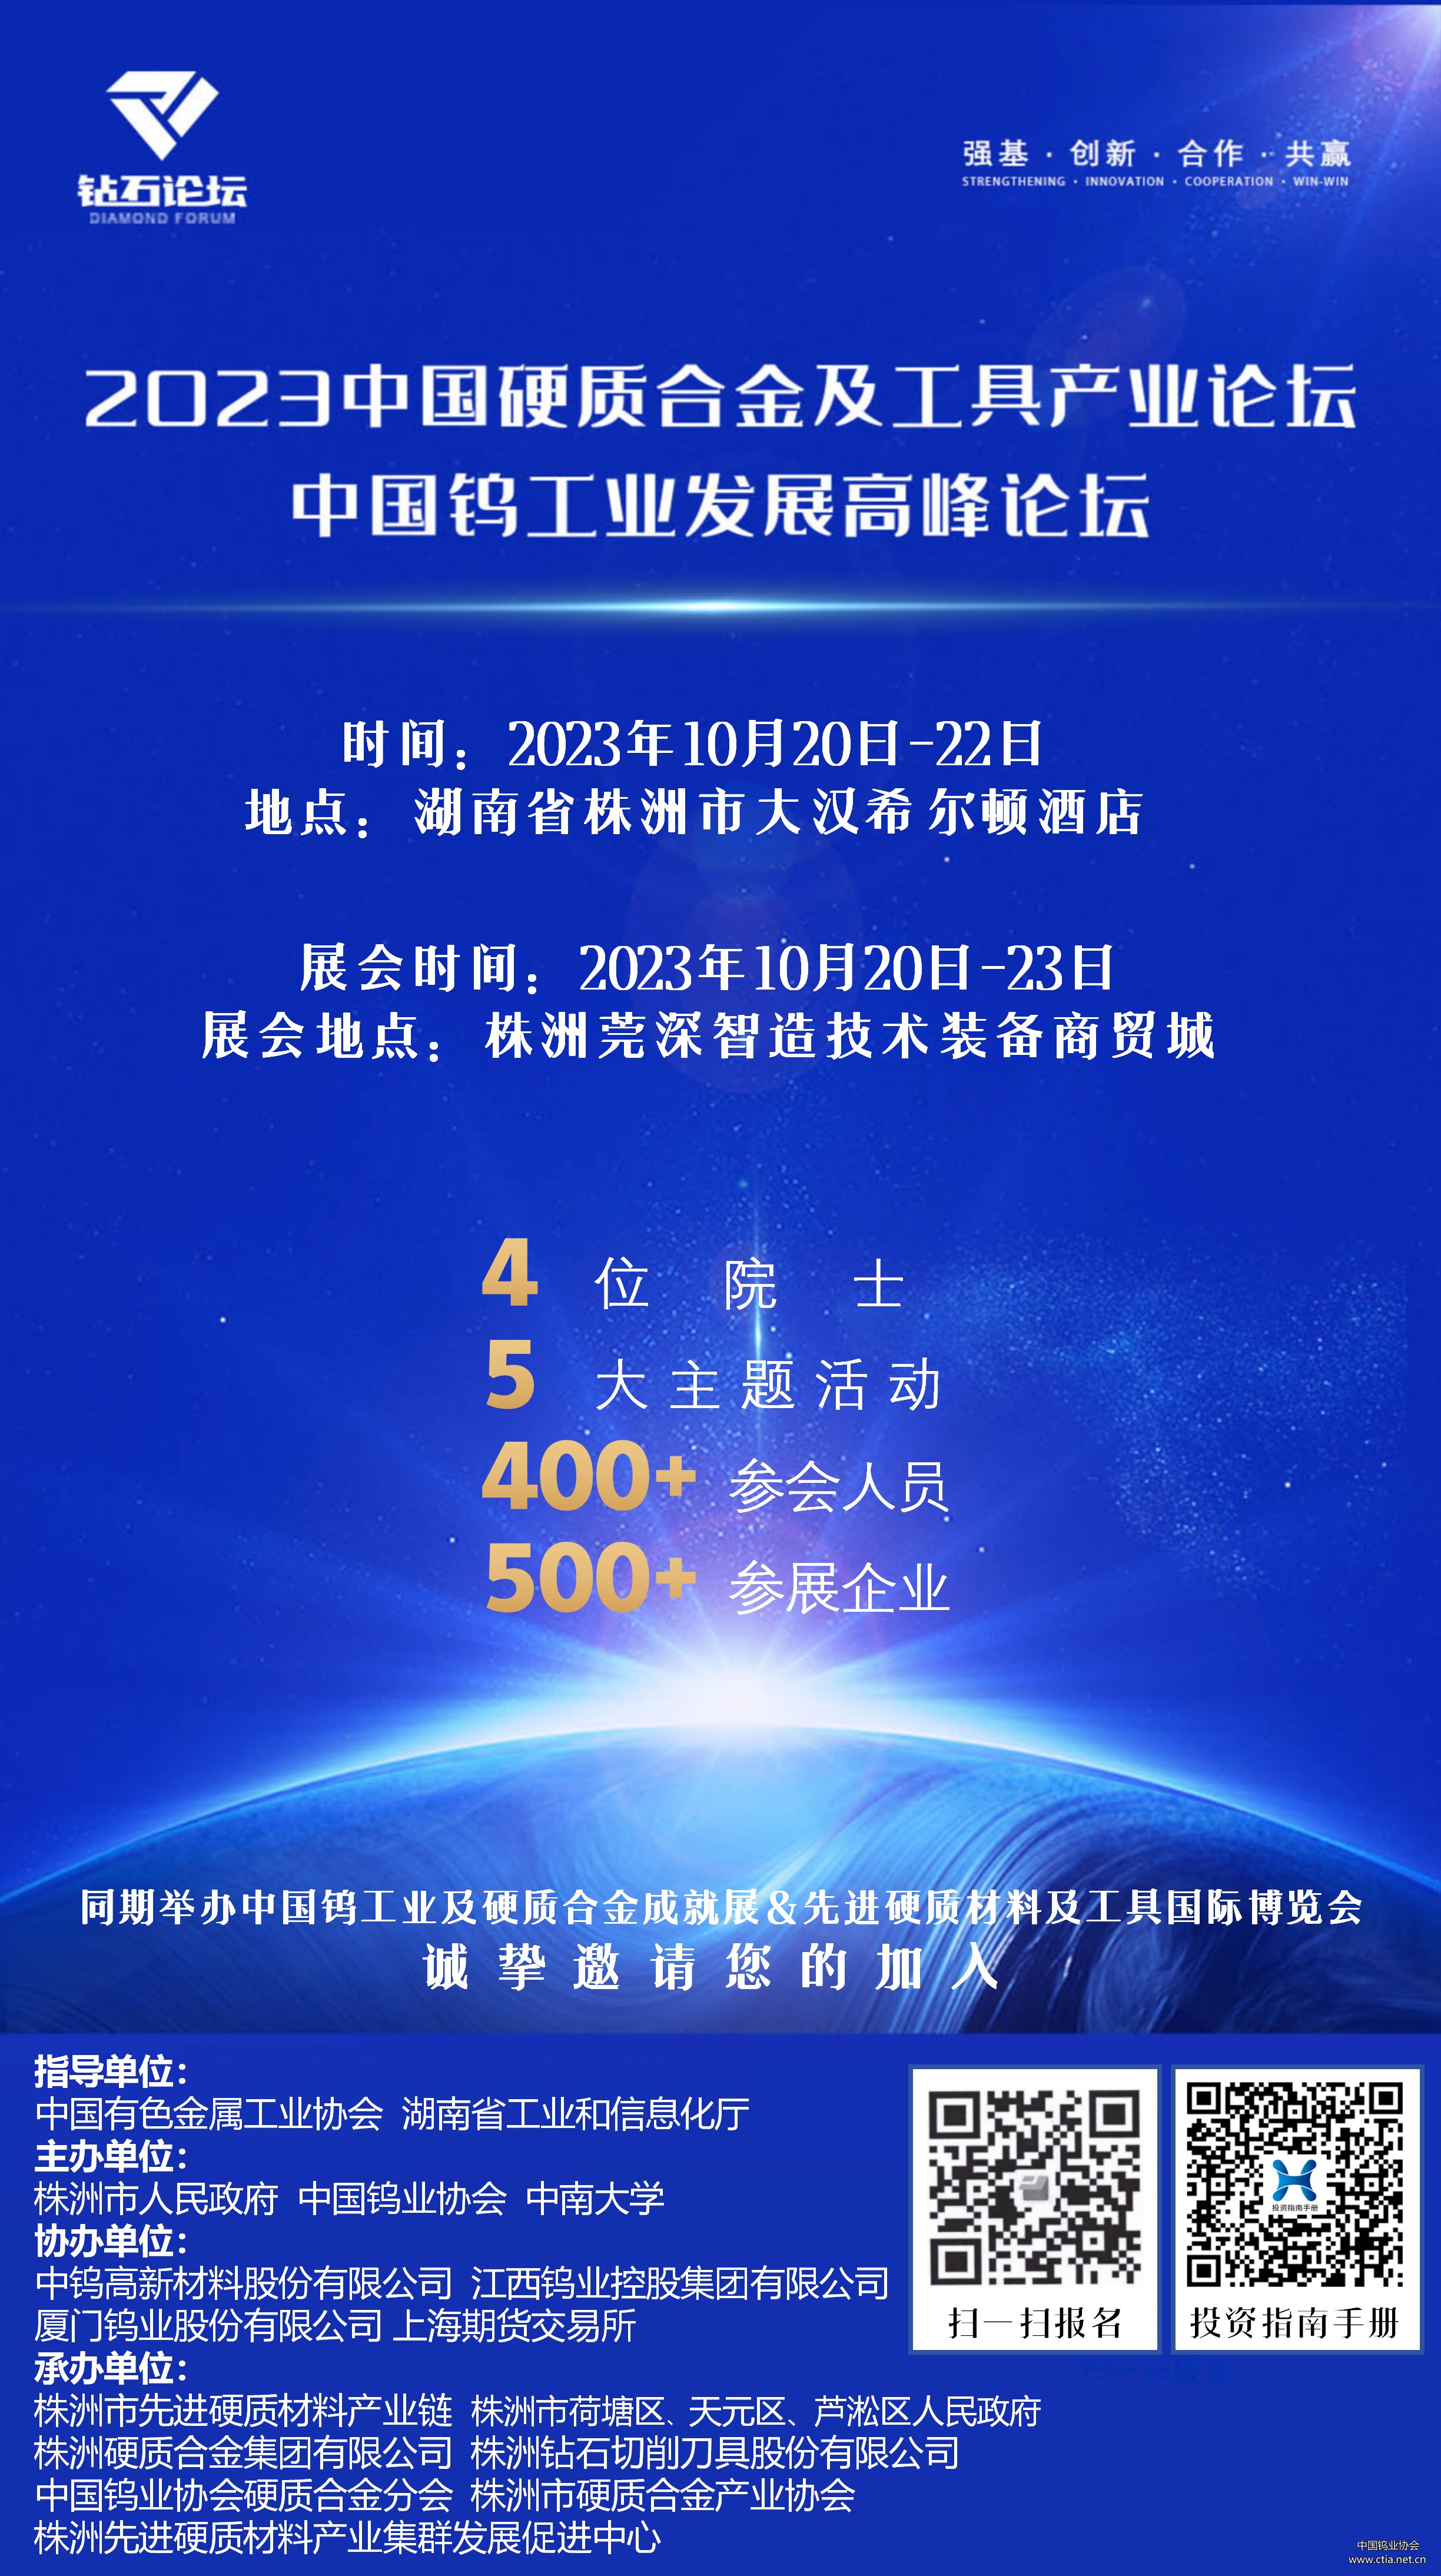 2023中国硬质合金及工具产业论坛将于10月20-22日在株洲盛大召开